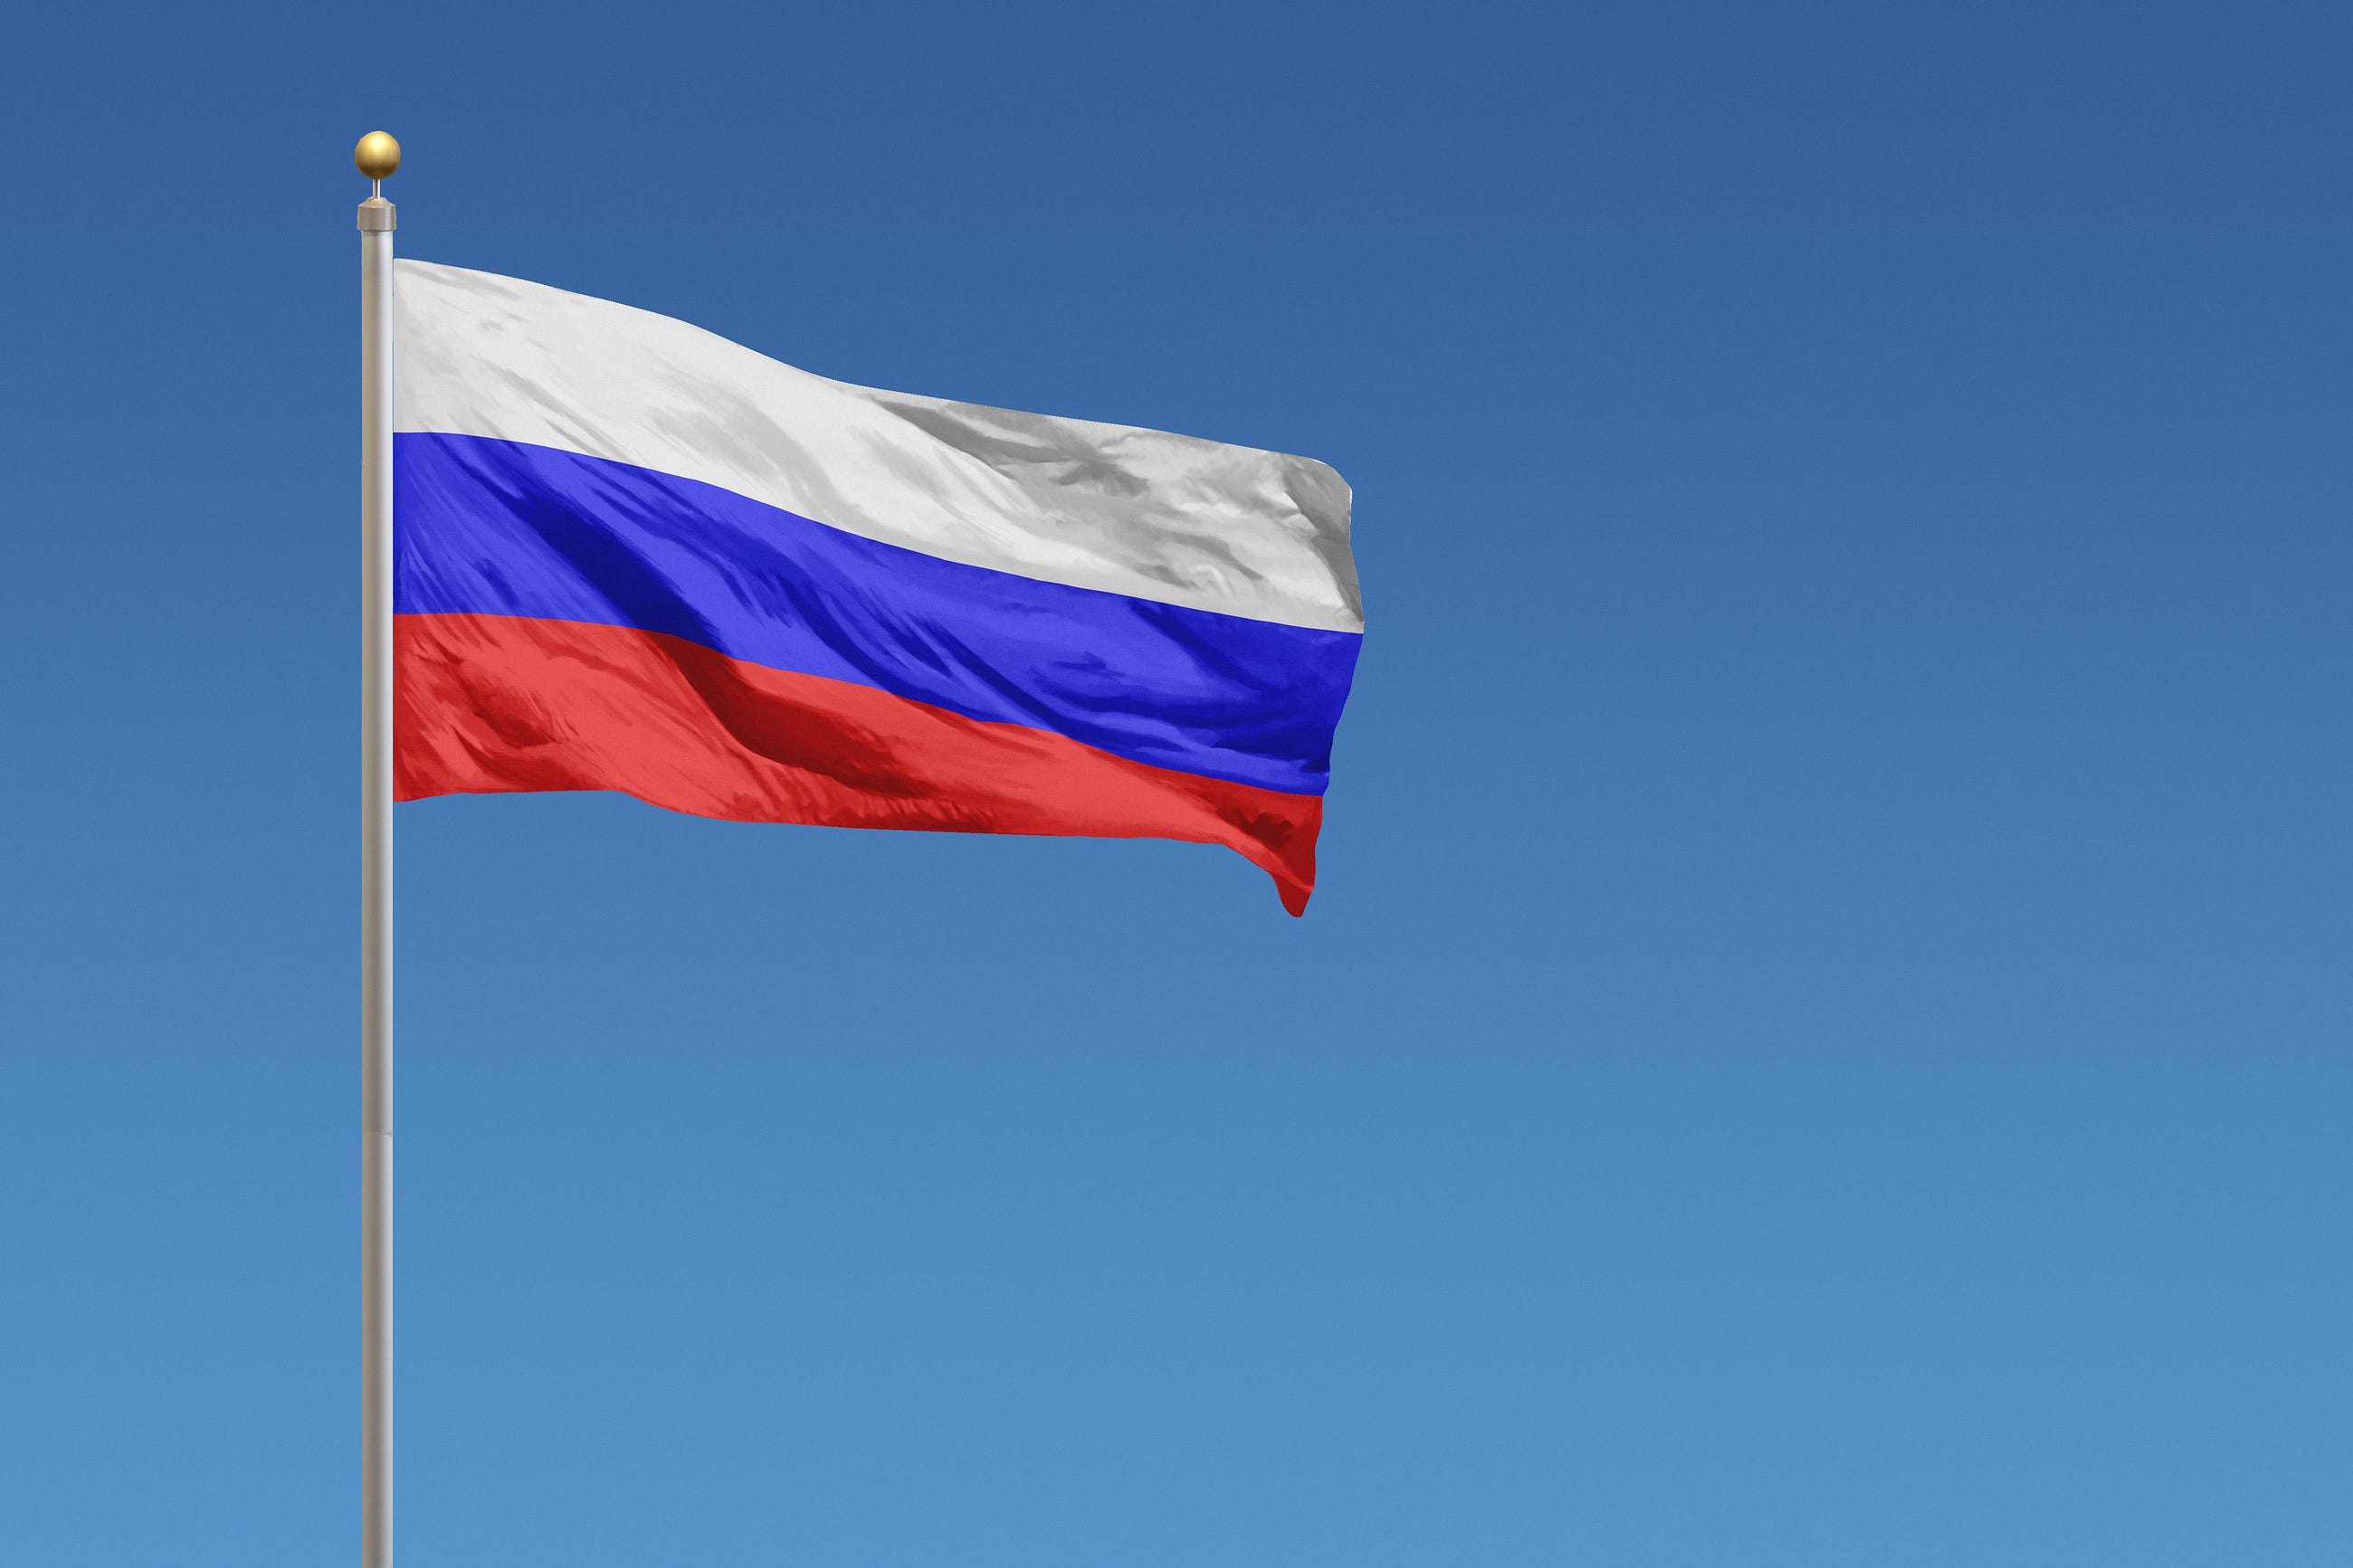 Rusya İle Ticari Başarının Yolu
Dijital Pazarlamadan Geçiyor